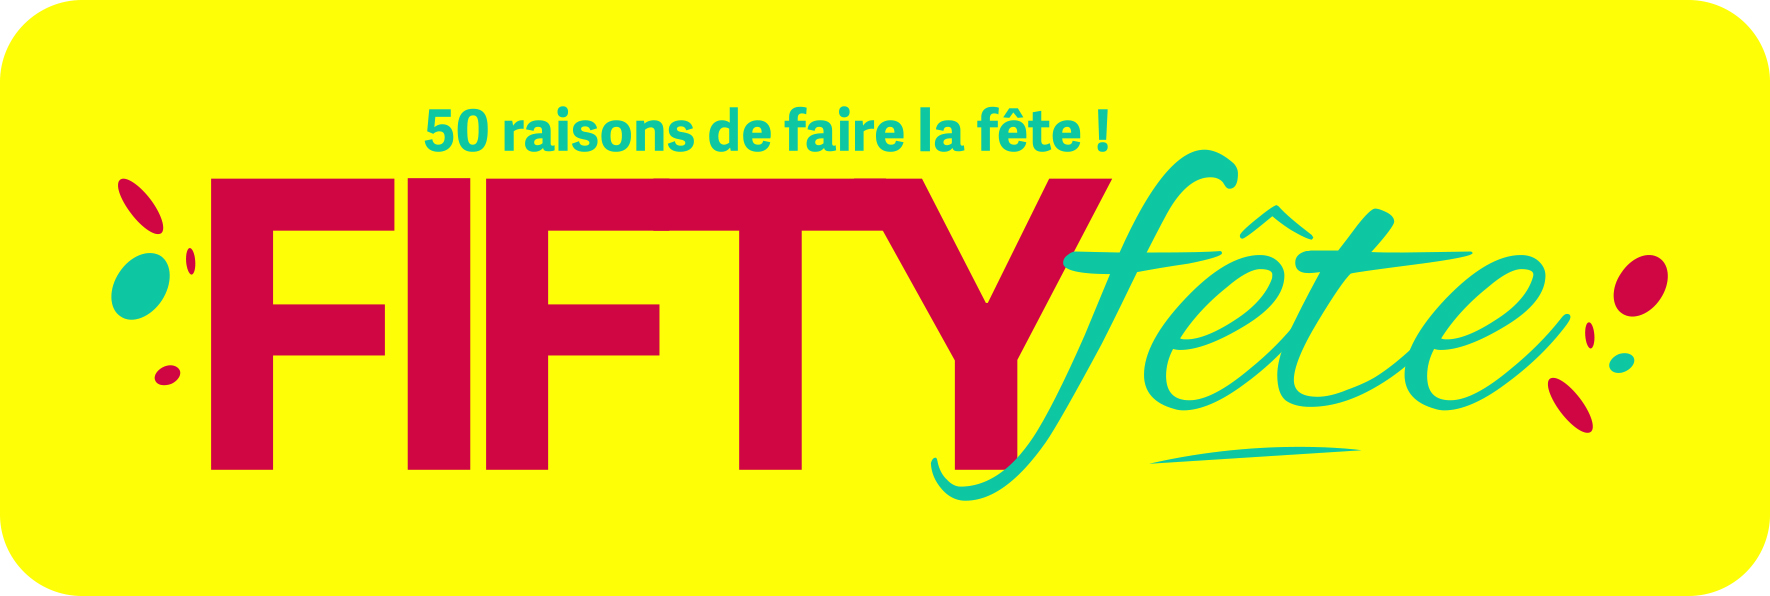 Écusson Flandre - Grand - FiftyFête